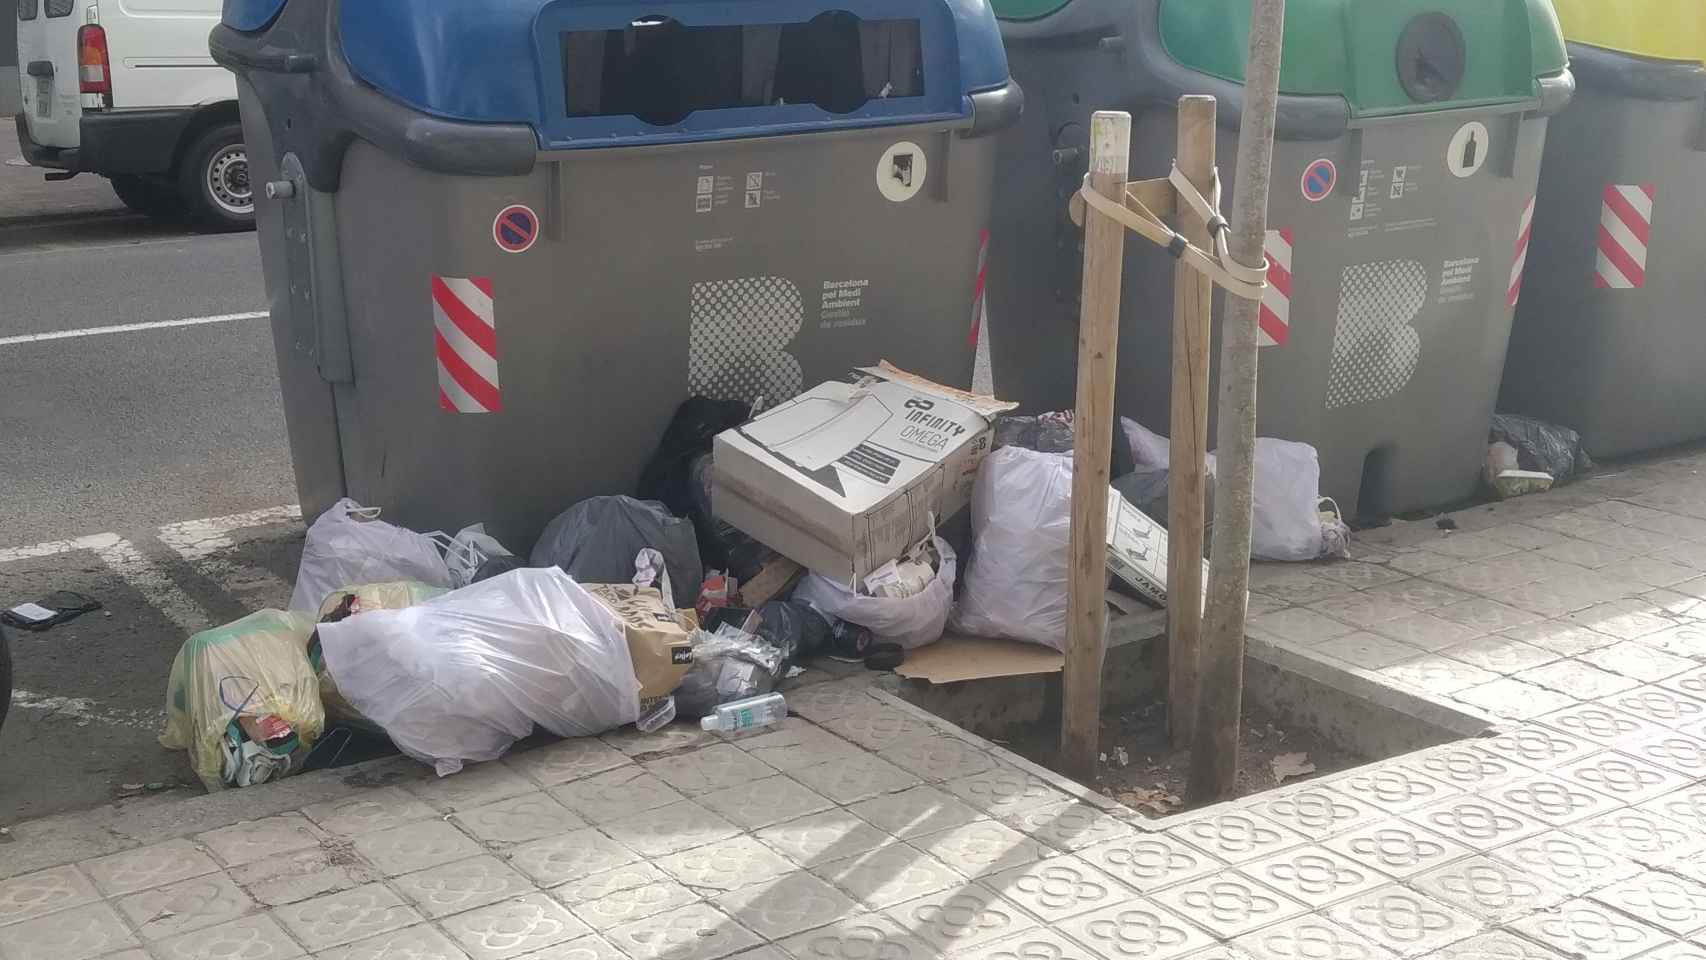 Bolsas de basura junto a contenedores de reciclaje / MA - JORDI SUBIRANA